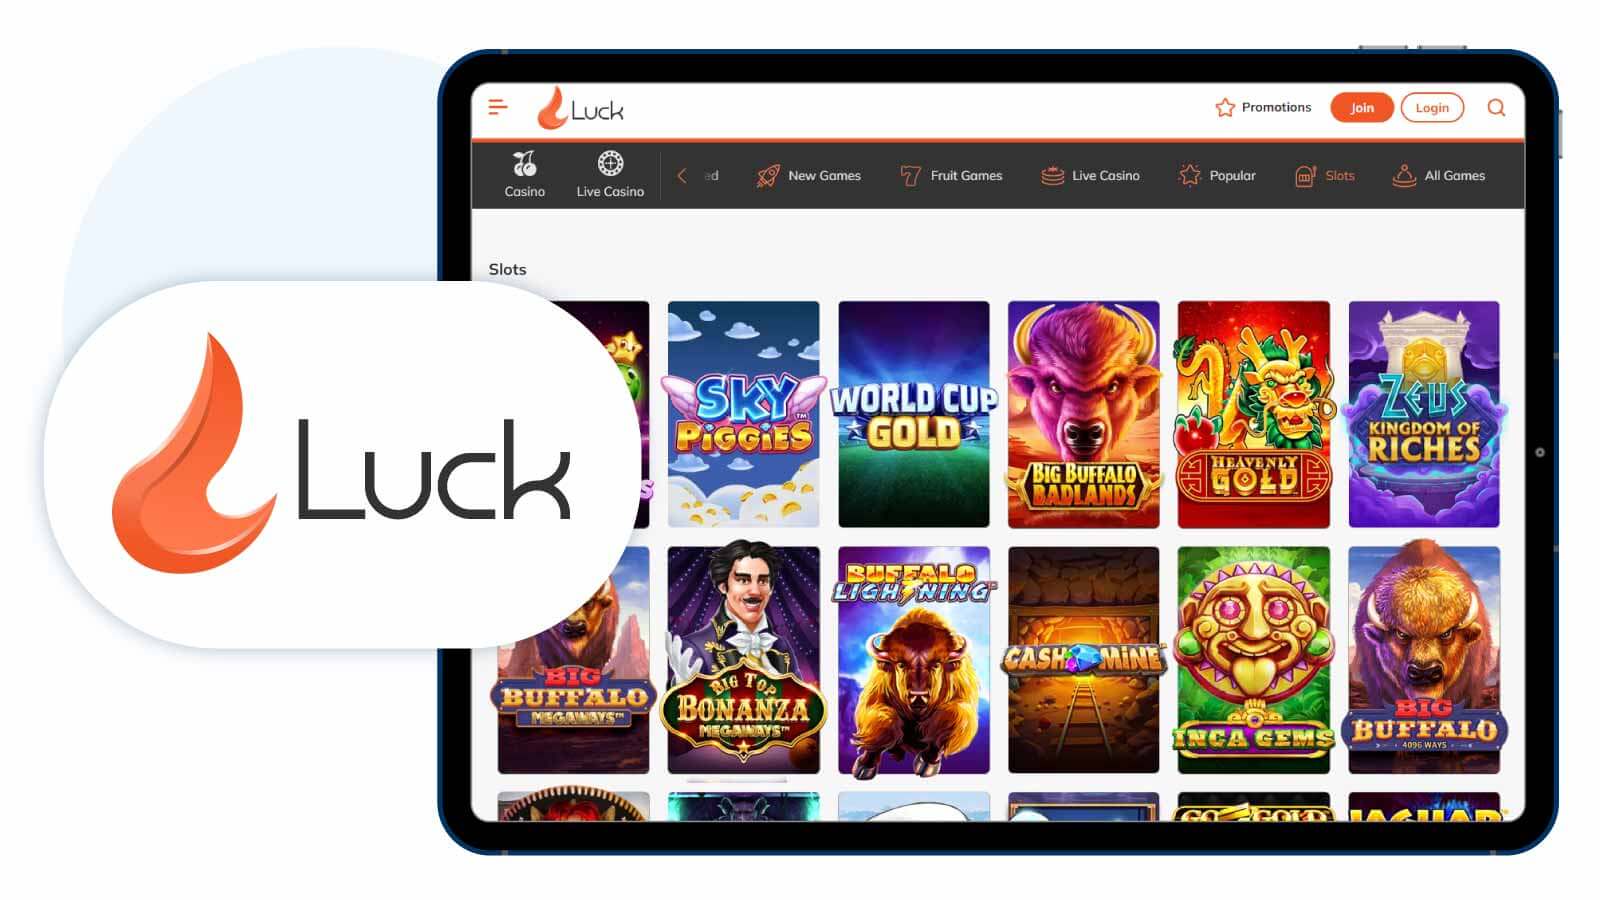 Luck.com – Top New Slot Site